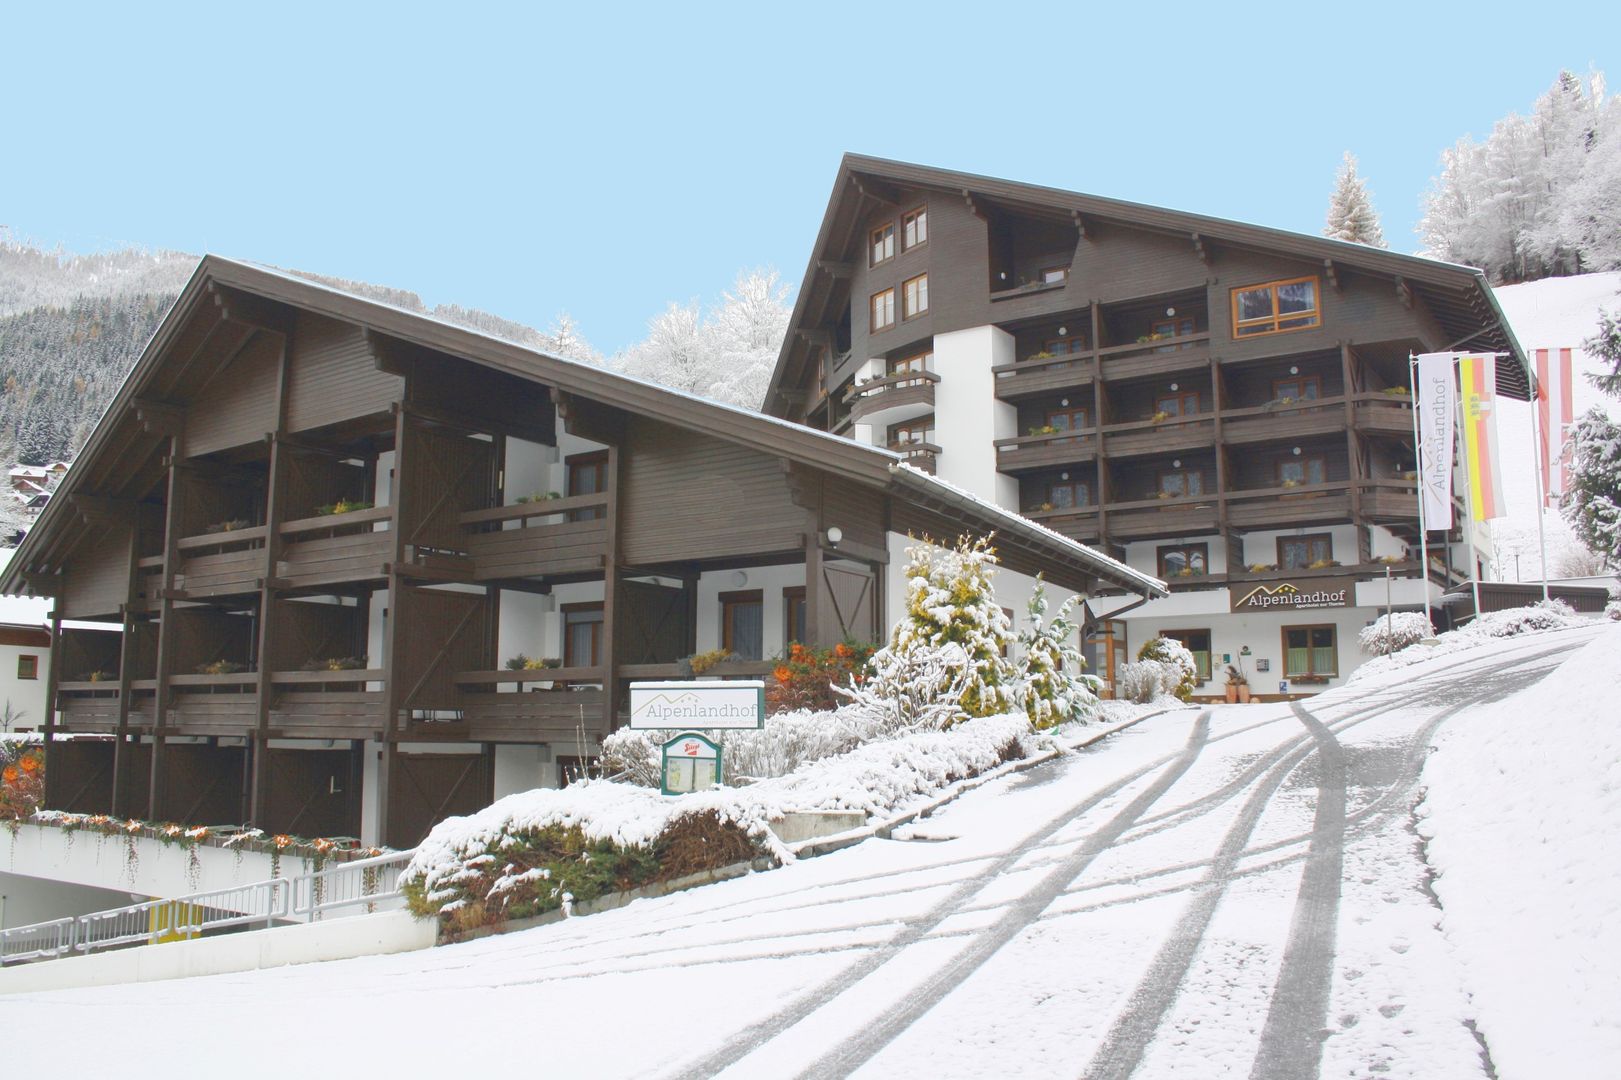 Meer info over Appartementen Alpenlandhof  bij Wintertrex